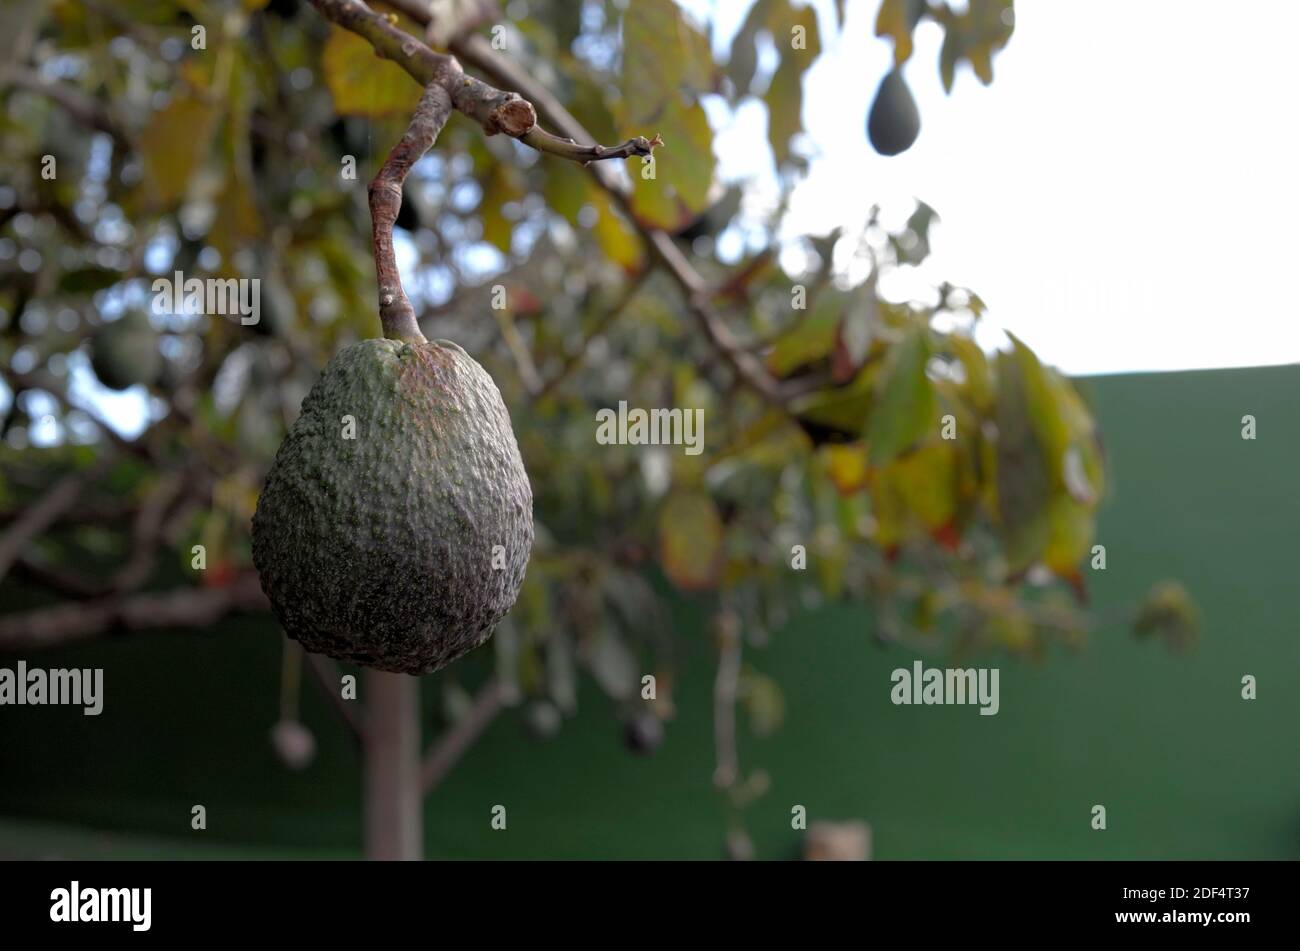 Aguacate fruta colgando de rama de árbol en la isla de Tenerife, donde el clima libre de heladas permite que las frutas tropicales se cultiven Foto de stock